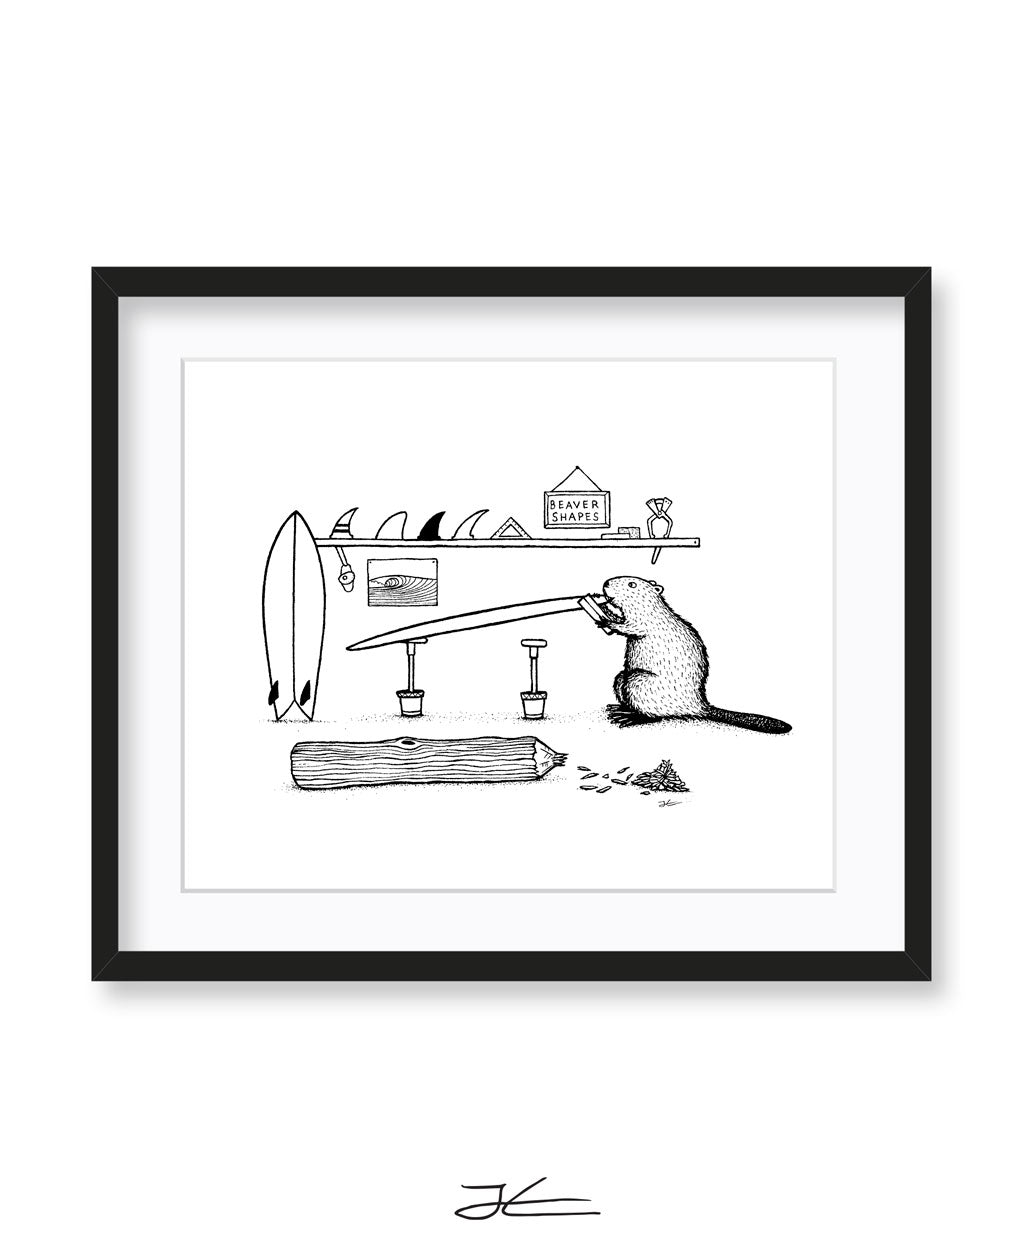 Beaver Shaping Bay - Print/ Framed Print